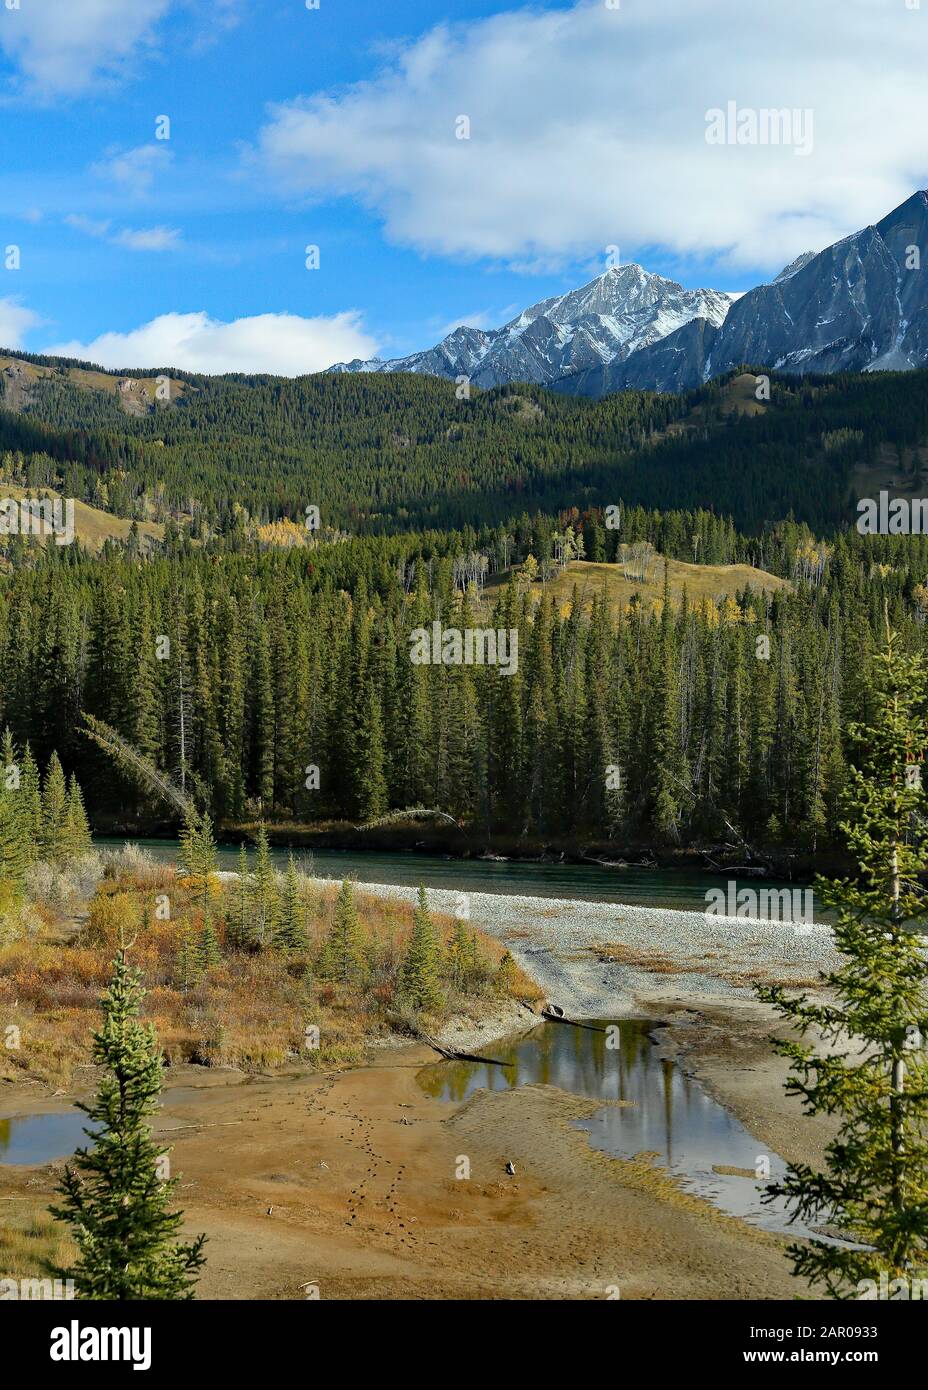 Arbalez la vallée de la rivière d'un point de vue élevé avec les montagnes rocheuses en arrière-plan Banque D'Images